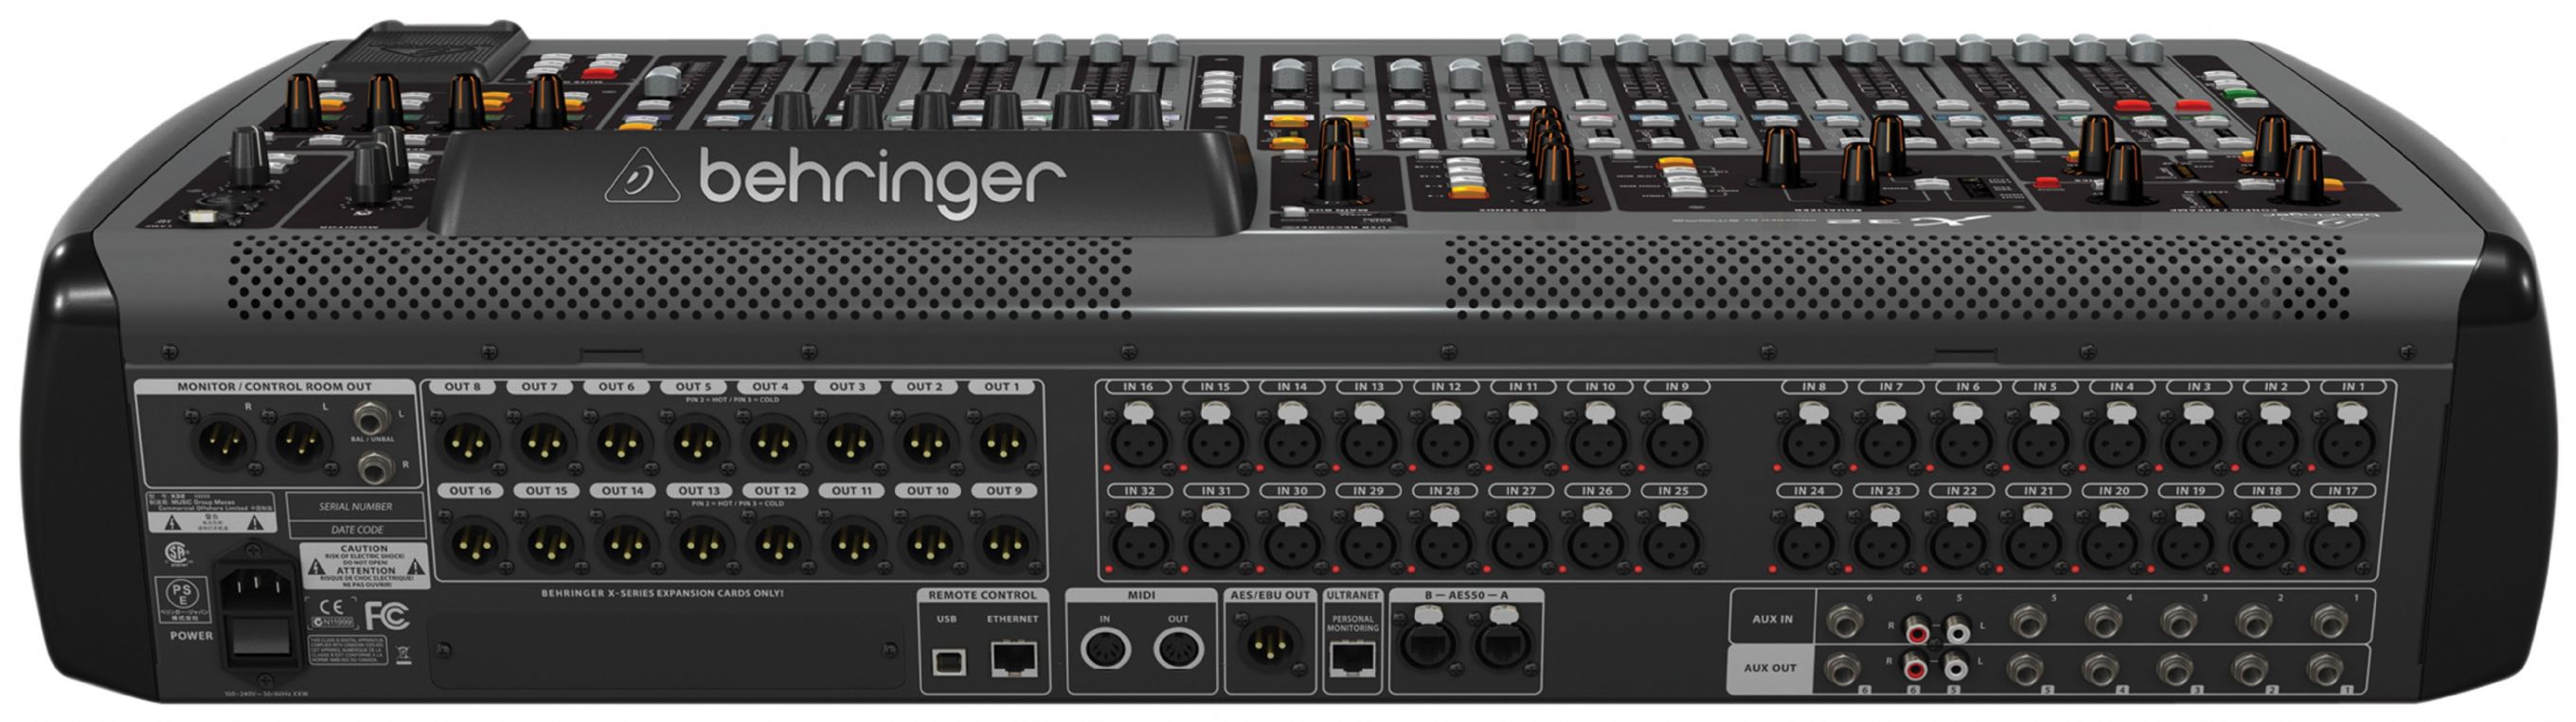 behringer x16 digital mixer